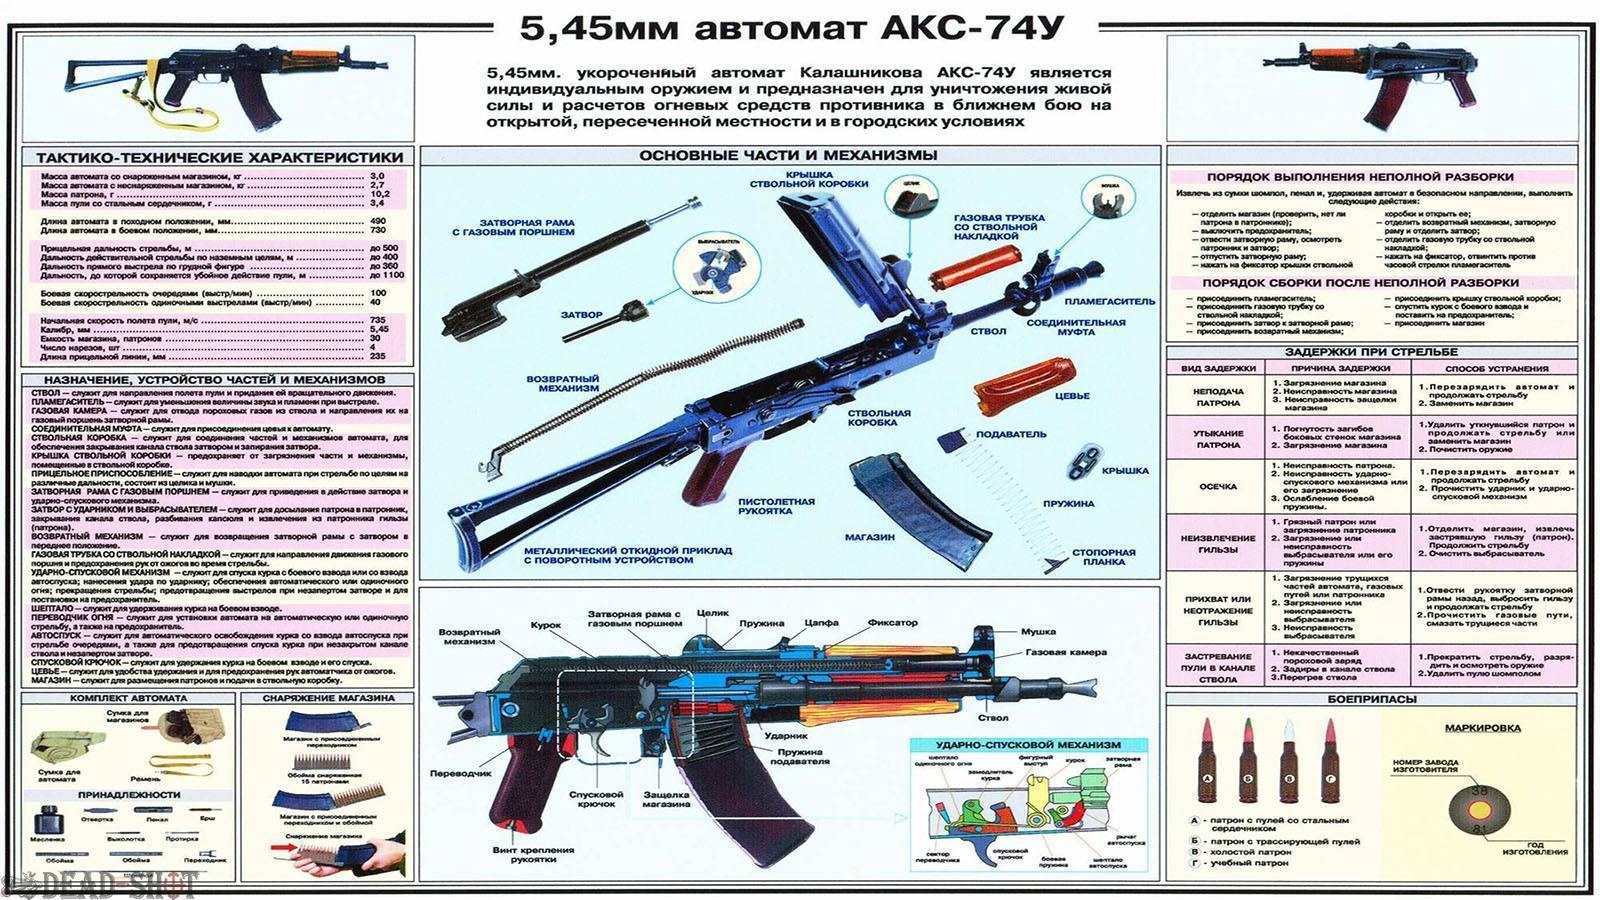 Автомат калашникова ак-74м: обзор, технические характеристики